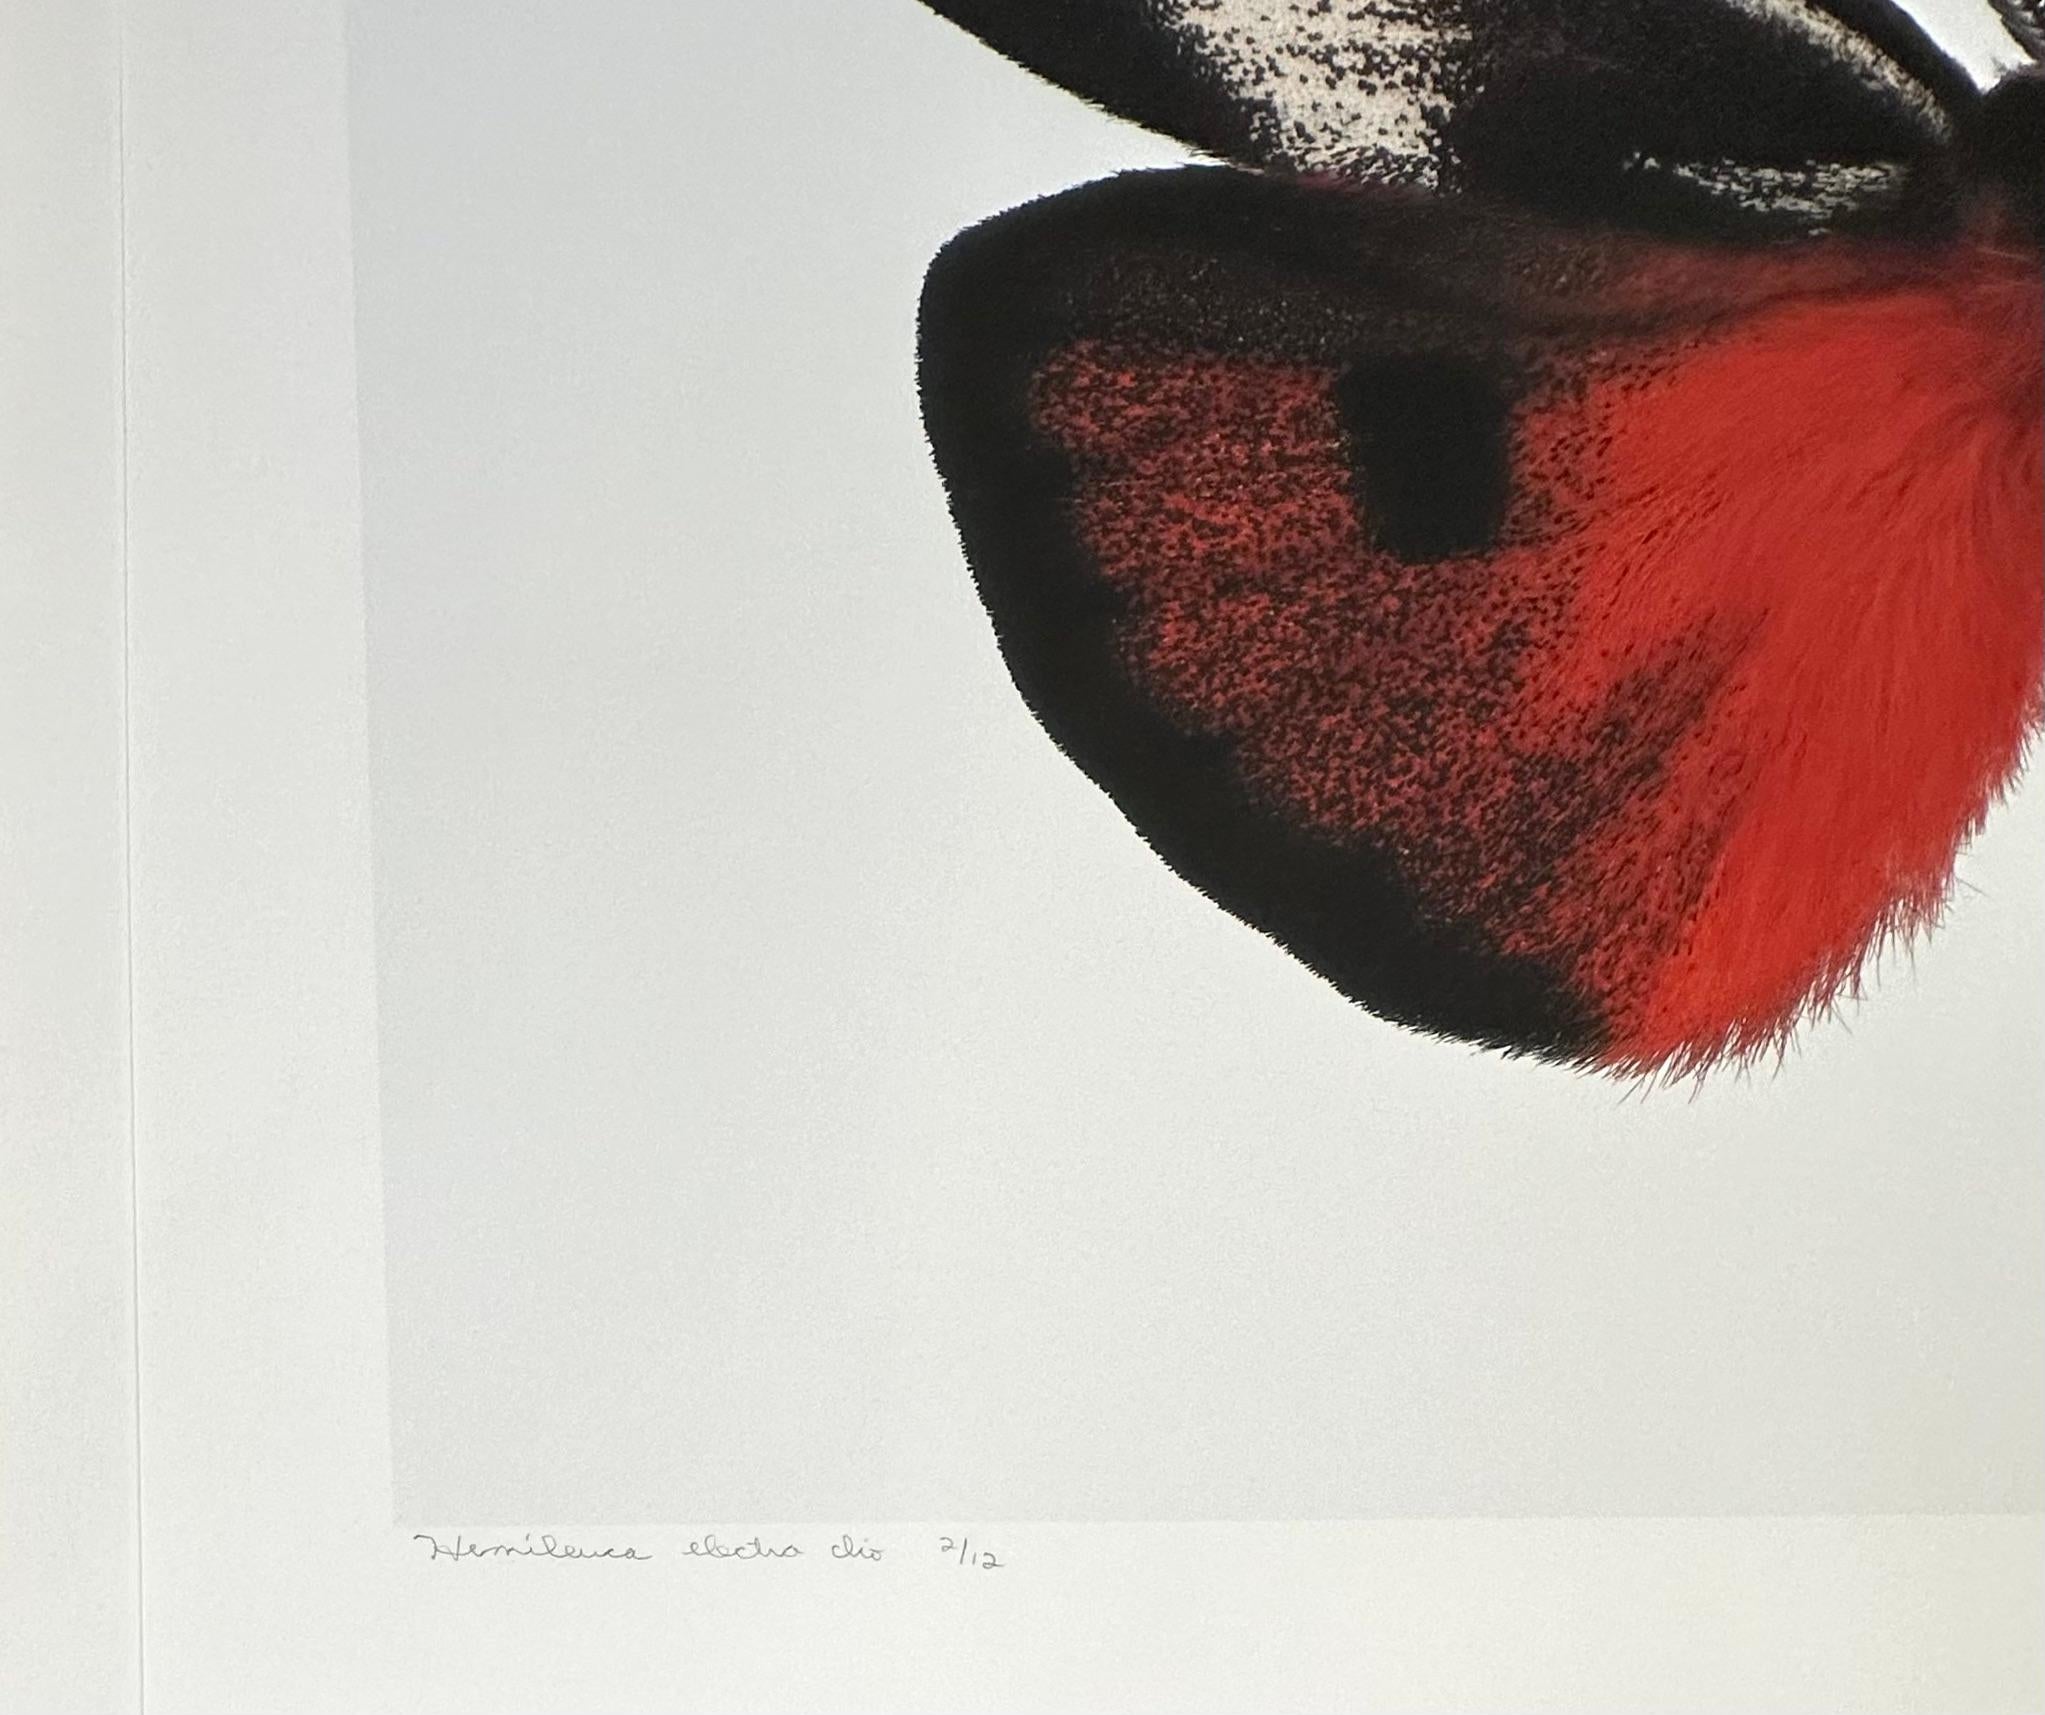 Auf diesem sehr detaillierten Pigmentdruck auf Aquarellpapier ist ein leuchtend roter, orangefarbener Falter mit weißen, schwarzen und gelben kreisförmigen Markierungen auf den Flügeln zu sehen, der sich dramatisch von einem weißen Hintergrund